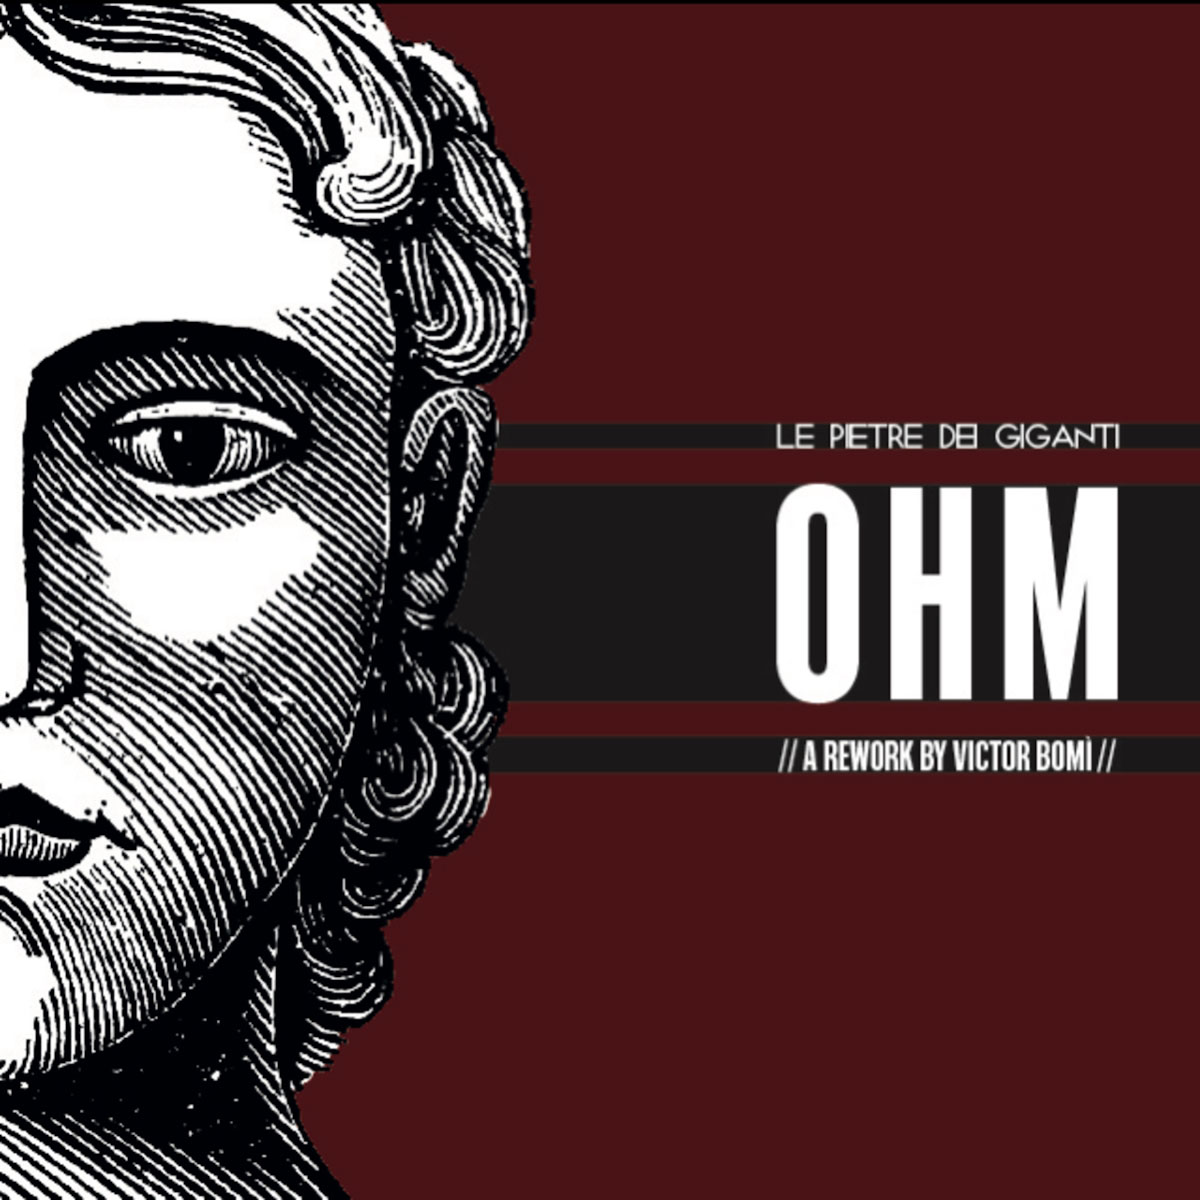 Al momento stai visualizzando Le Pietre Dei Giganti: esce il rework di “Ohm” feat. Victor Bomì